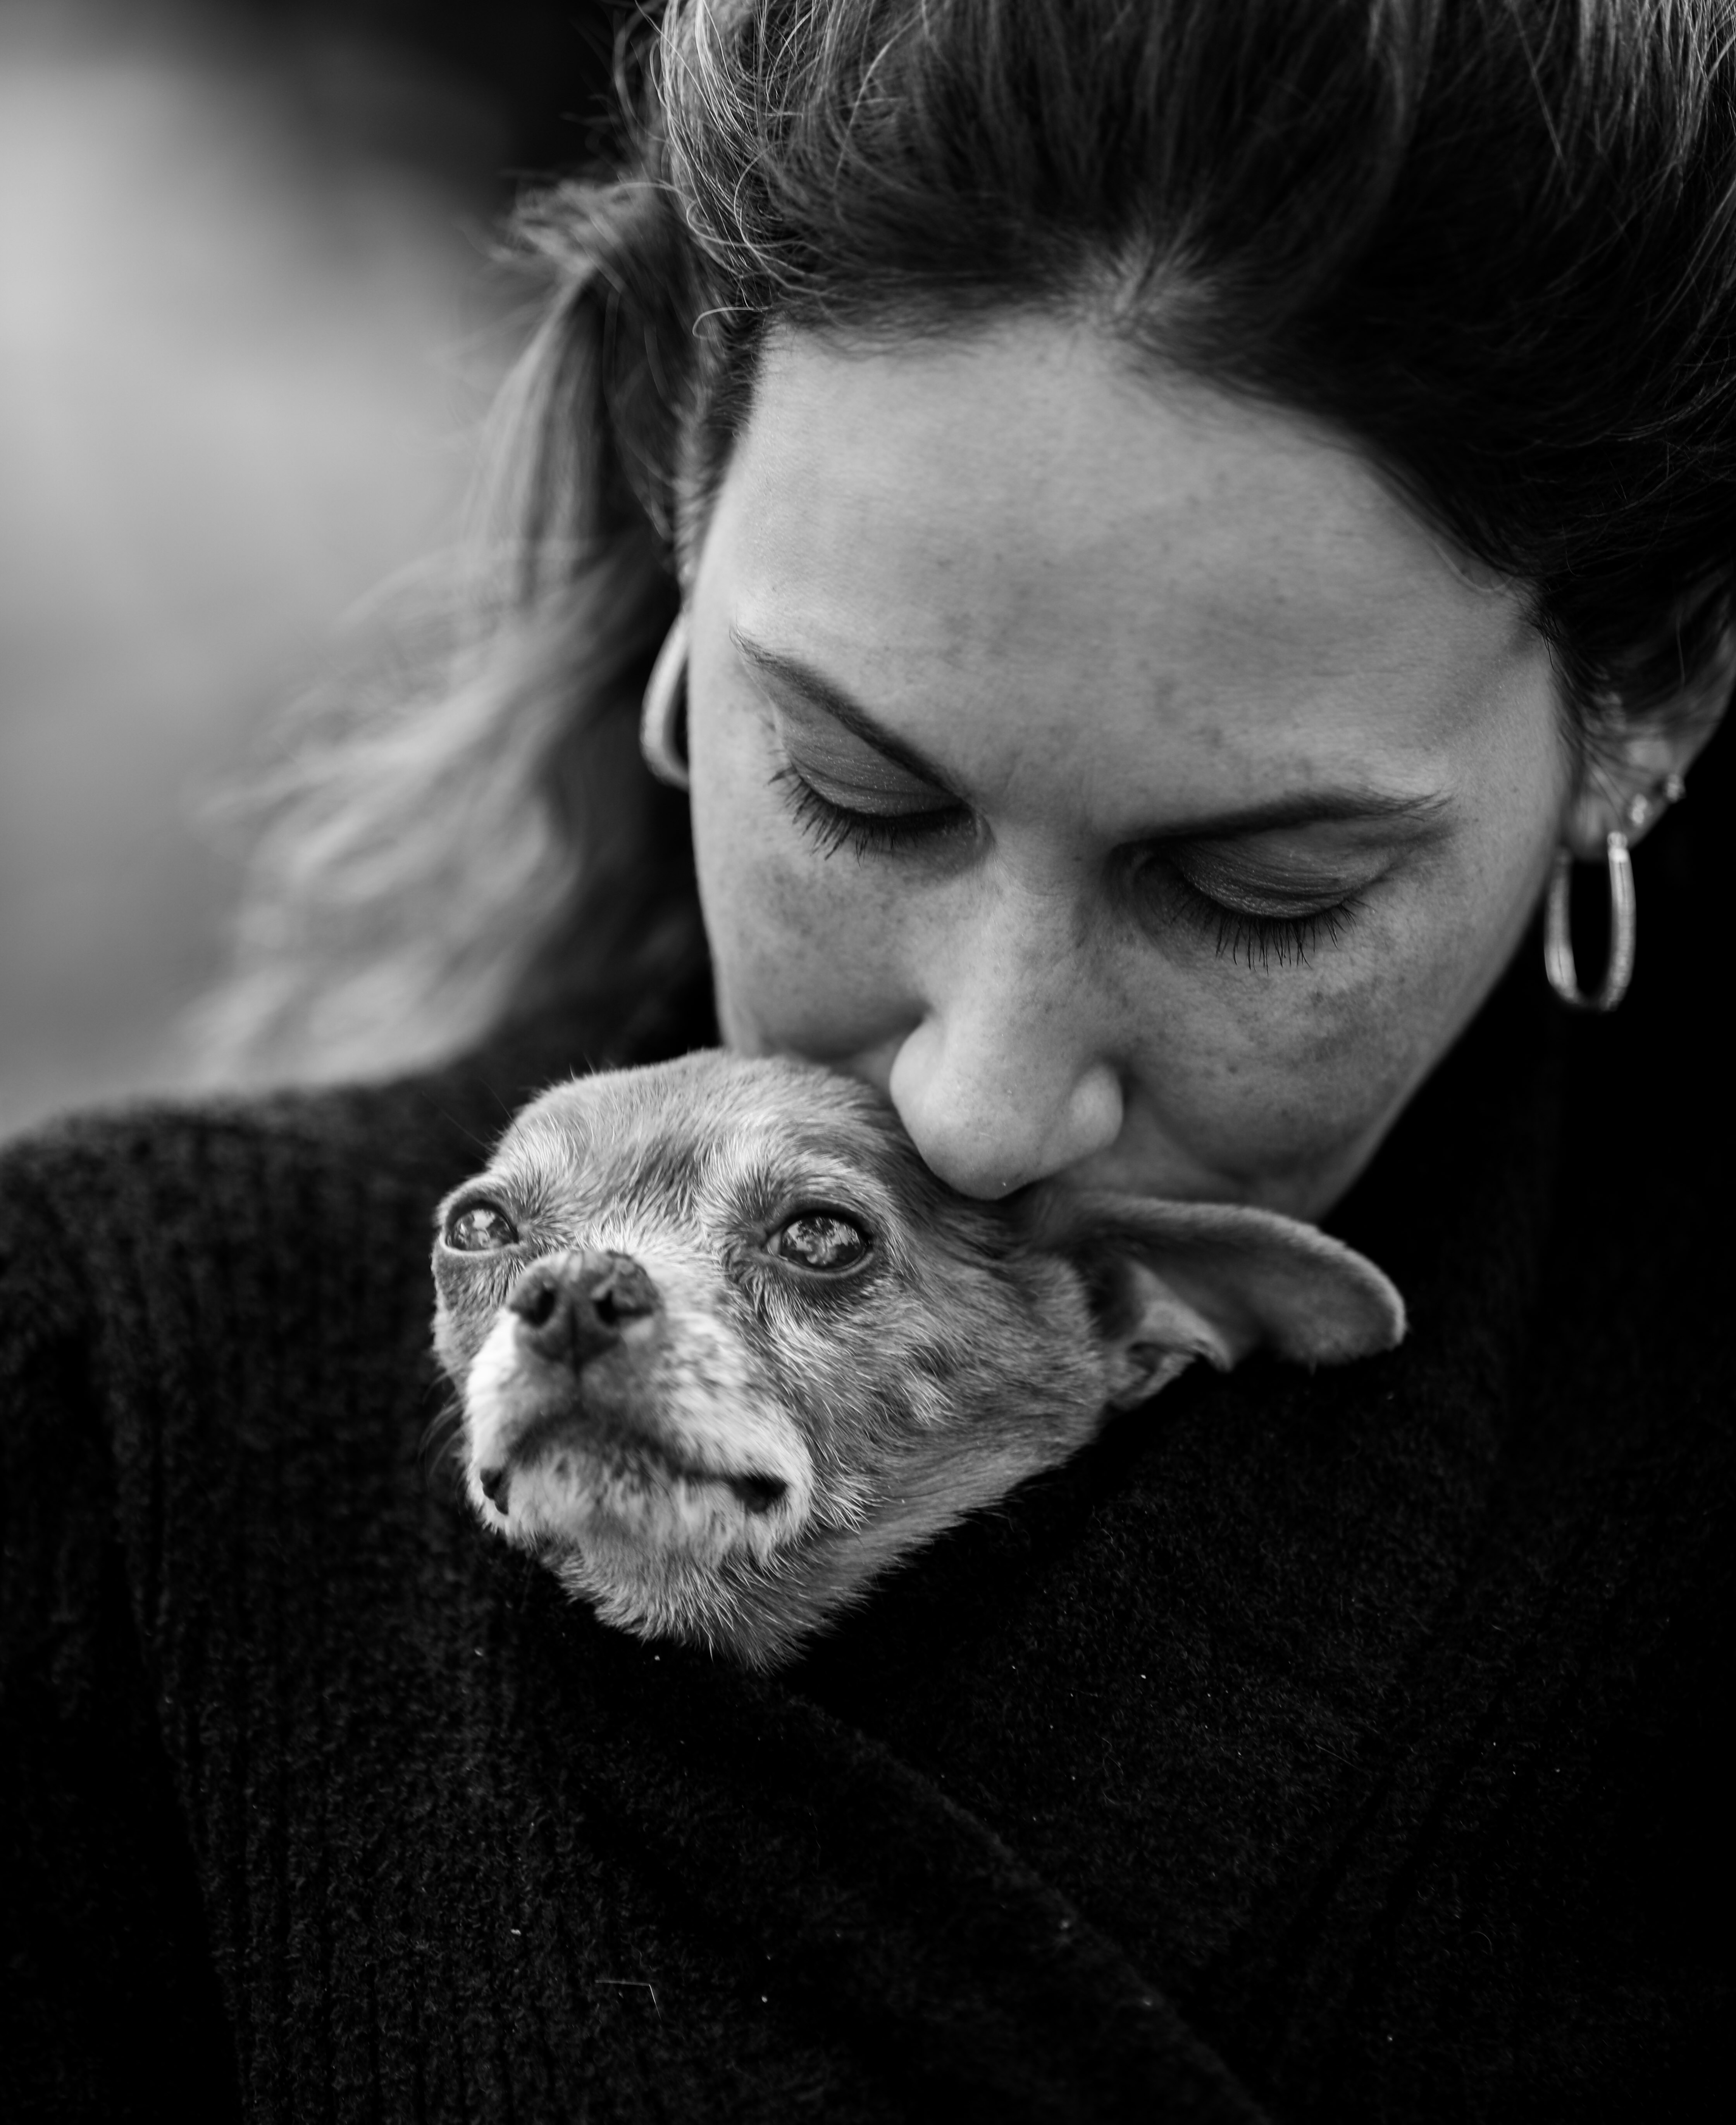 يلتقط مصور نهاية حياته صورًا لحيوانات أليفة تحتضر مجانًا لمساعدة أصحاب الحيوانات الأليفة في حزنهم